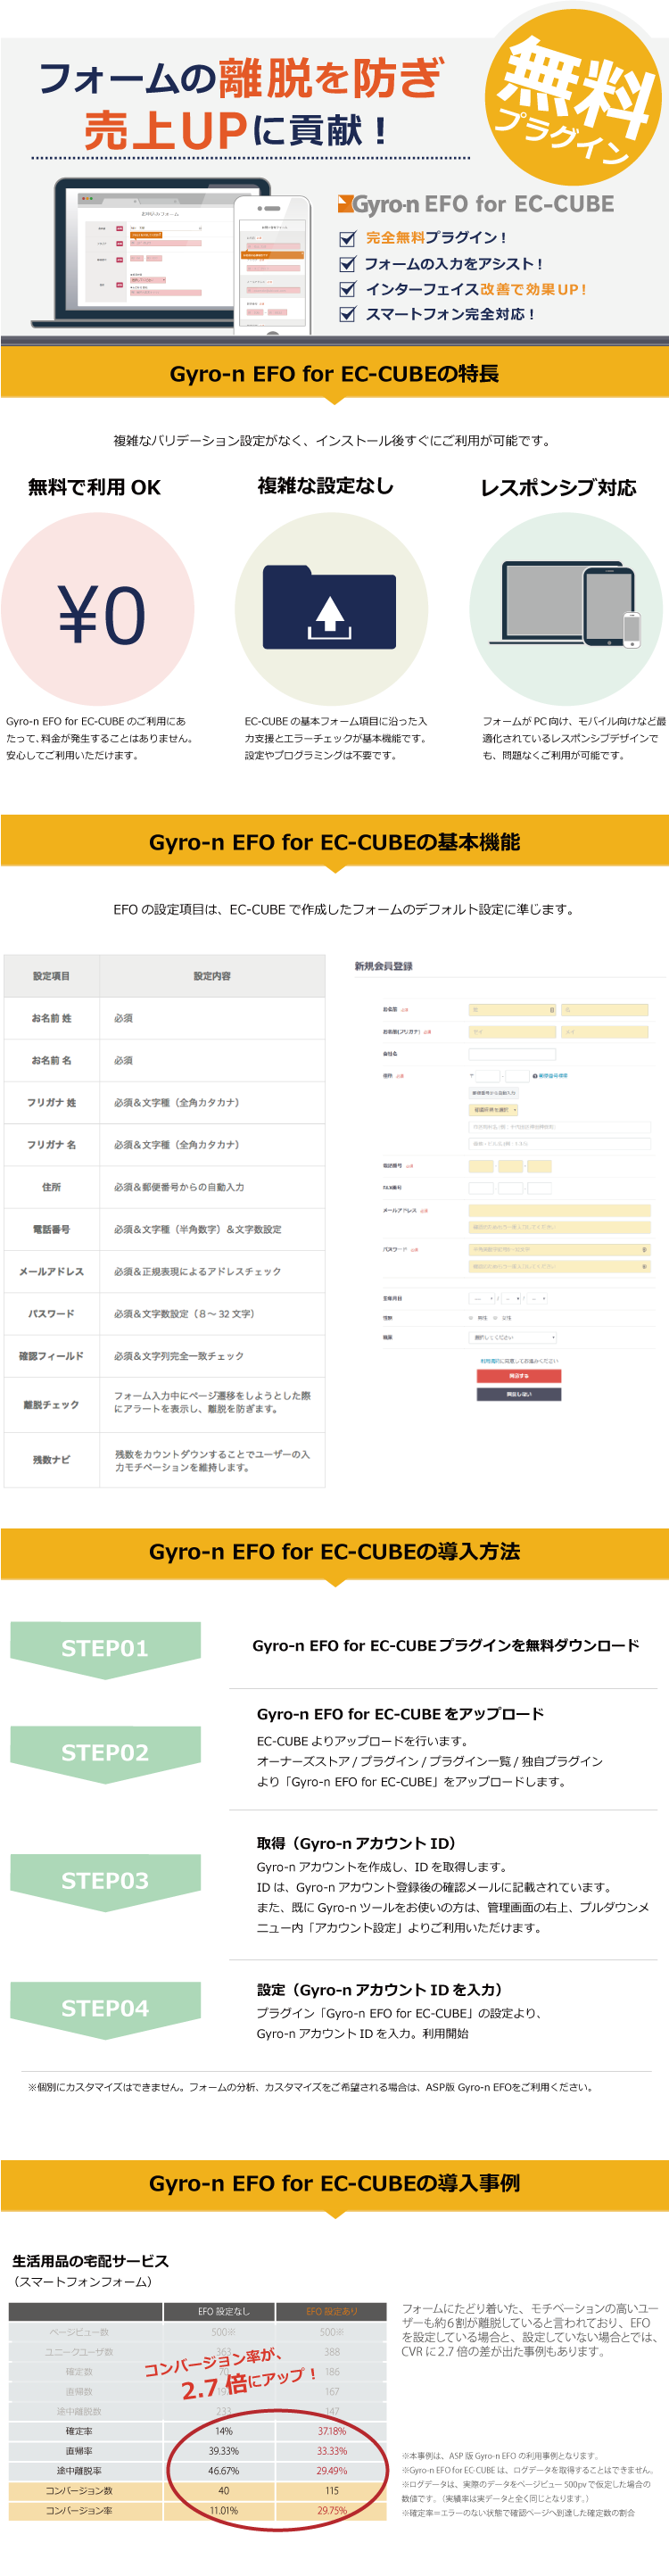 Gyro-n EFO for EC-CUBE3